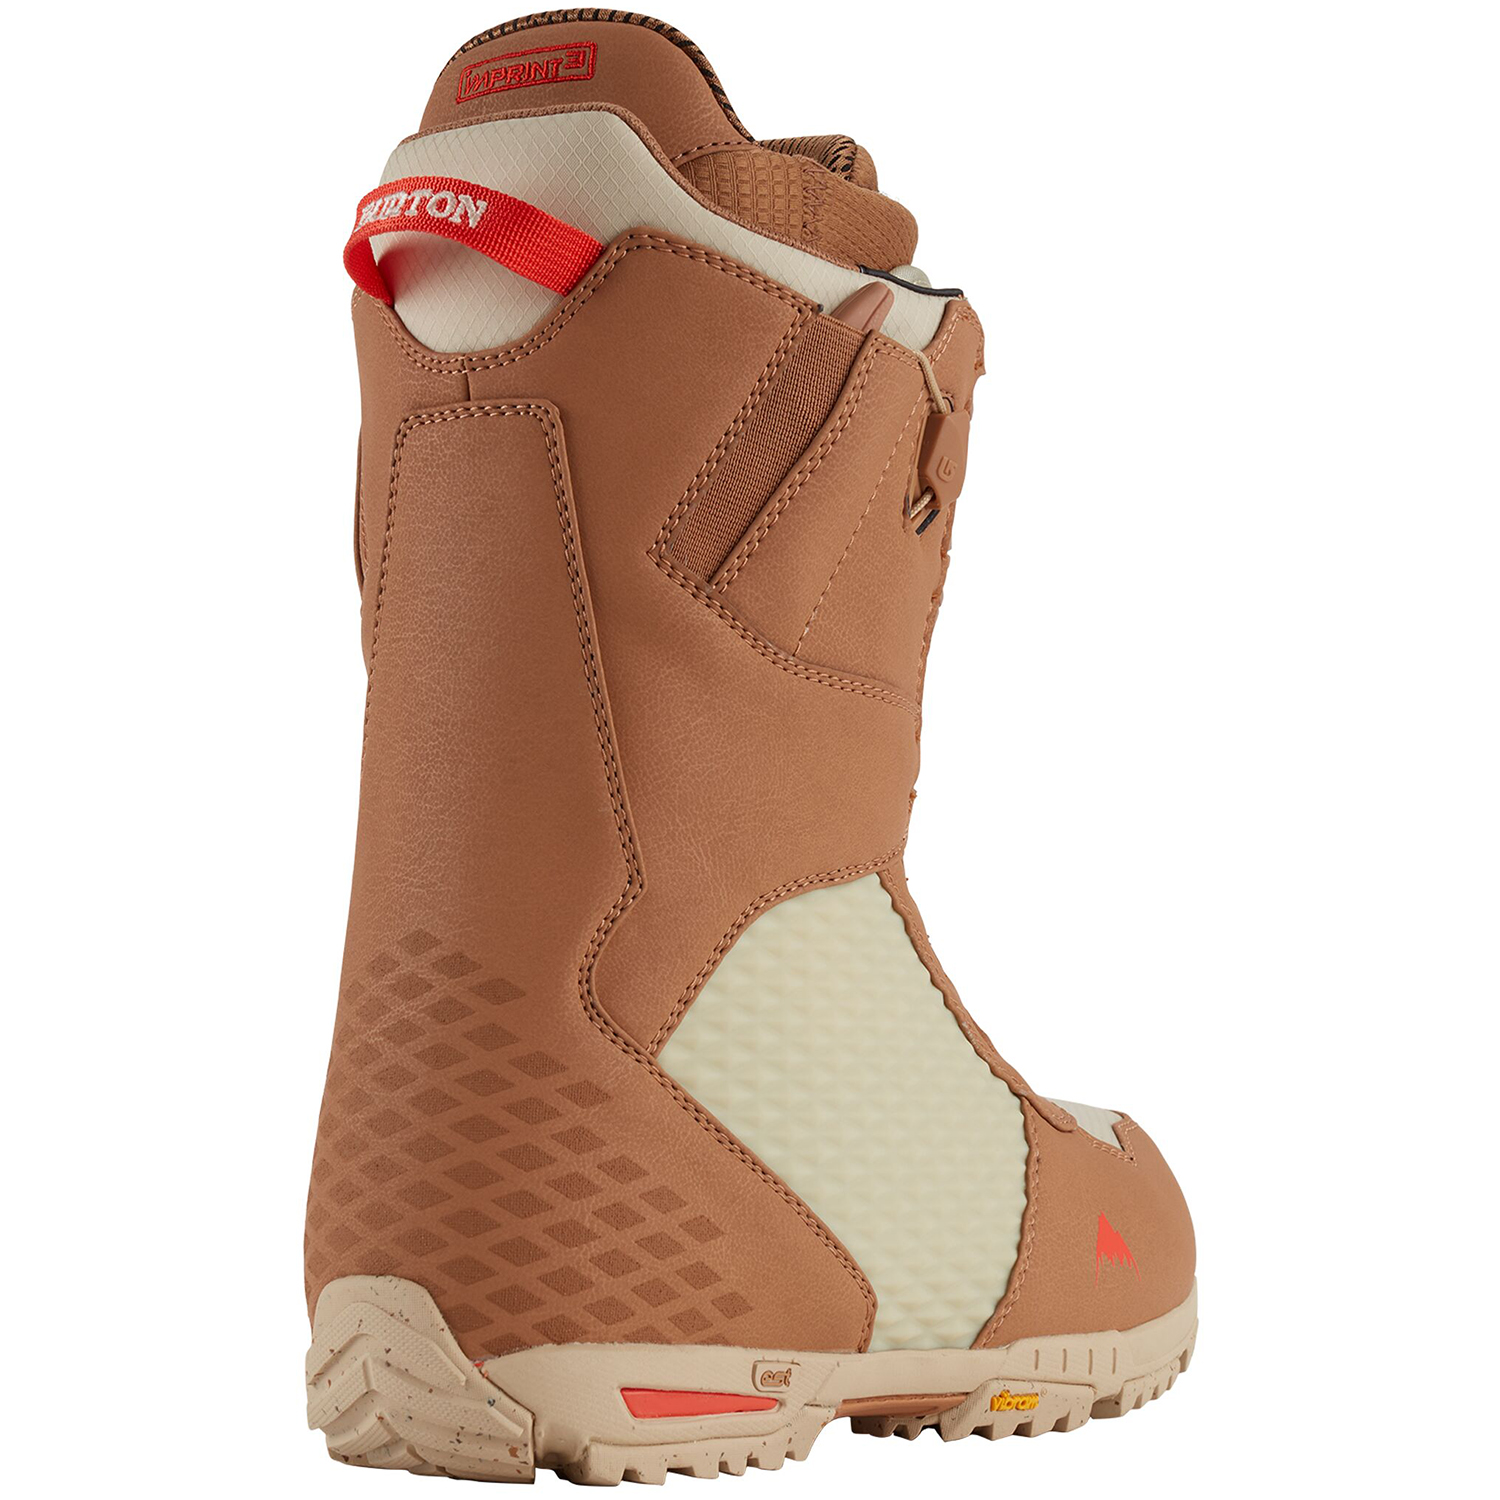 Ботинки сноубордические Burton 20-21 Imperial Speedzone Camel, цвет светло-коричневый, размер 44,0 EUR 10622107200 - фото 2